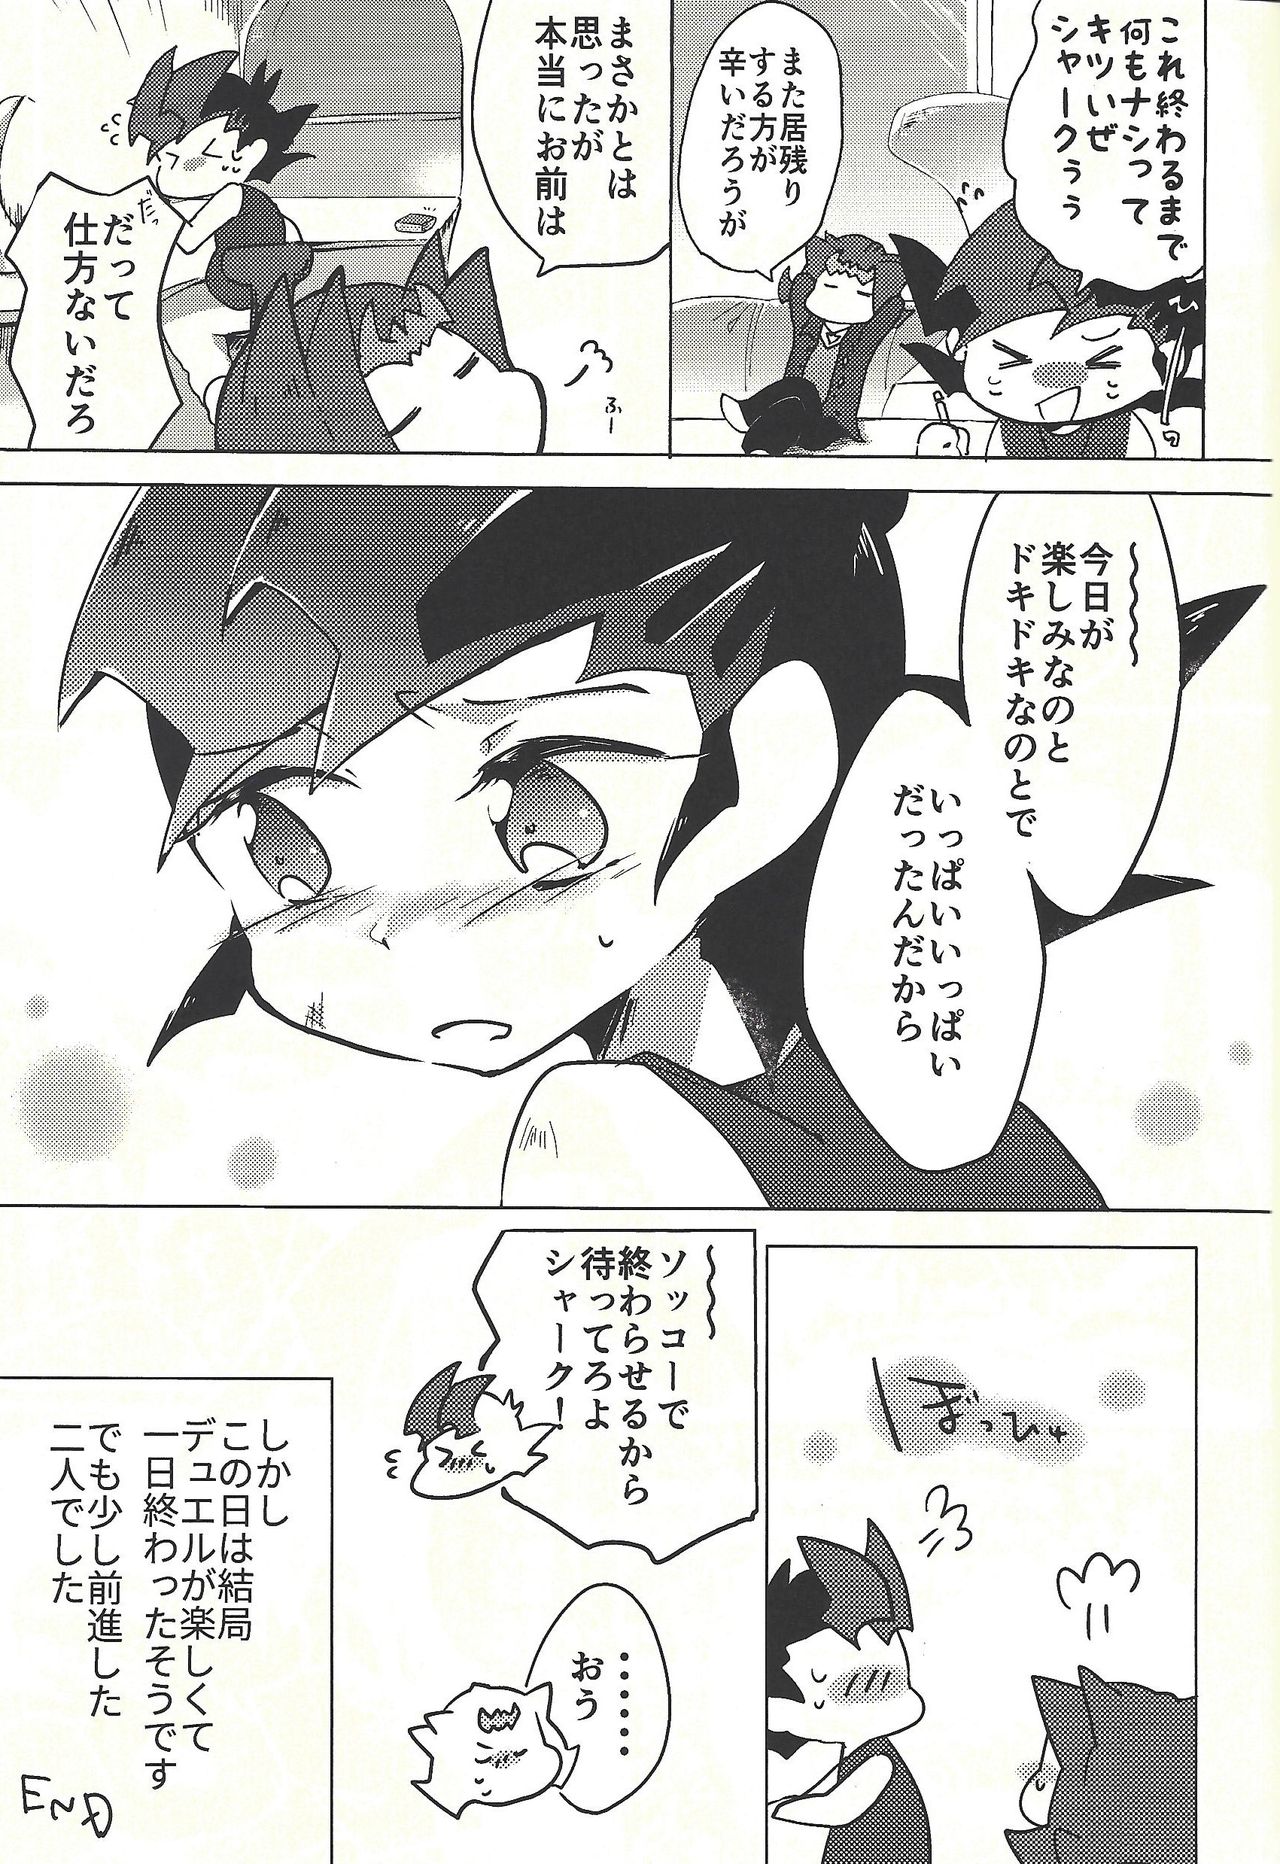 (Ore no Turn vs. 2019) [Wakaru mushi (623)] ☓ Yume resu fumin rēsu (Yu-Gi-Oh! ZEXAL) page 30 full